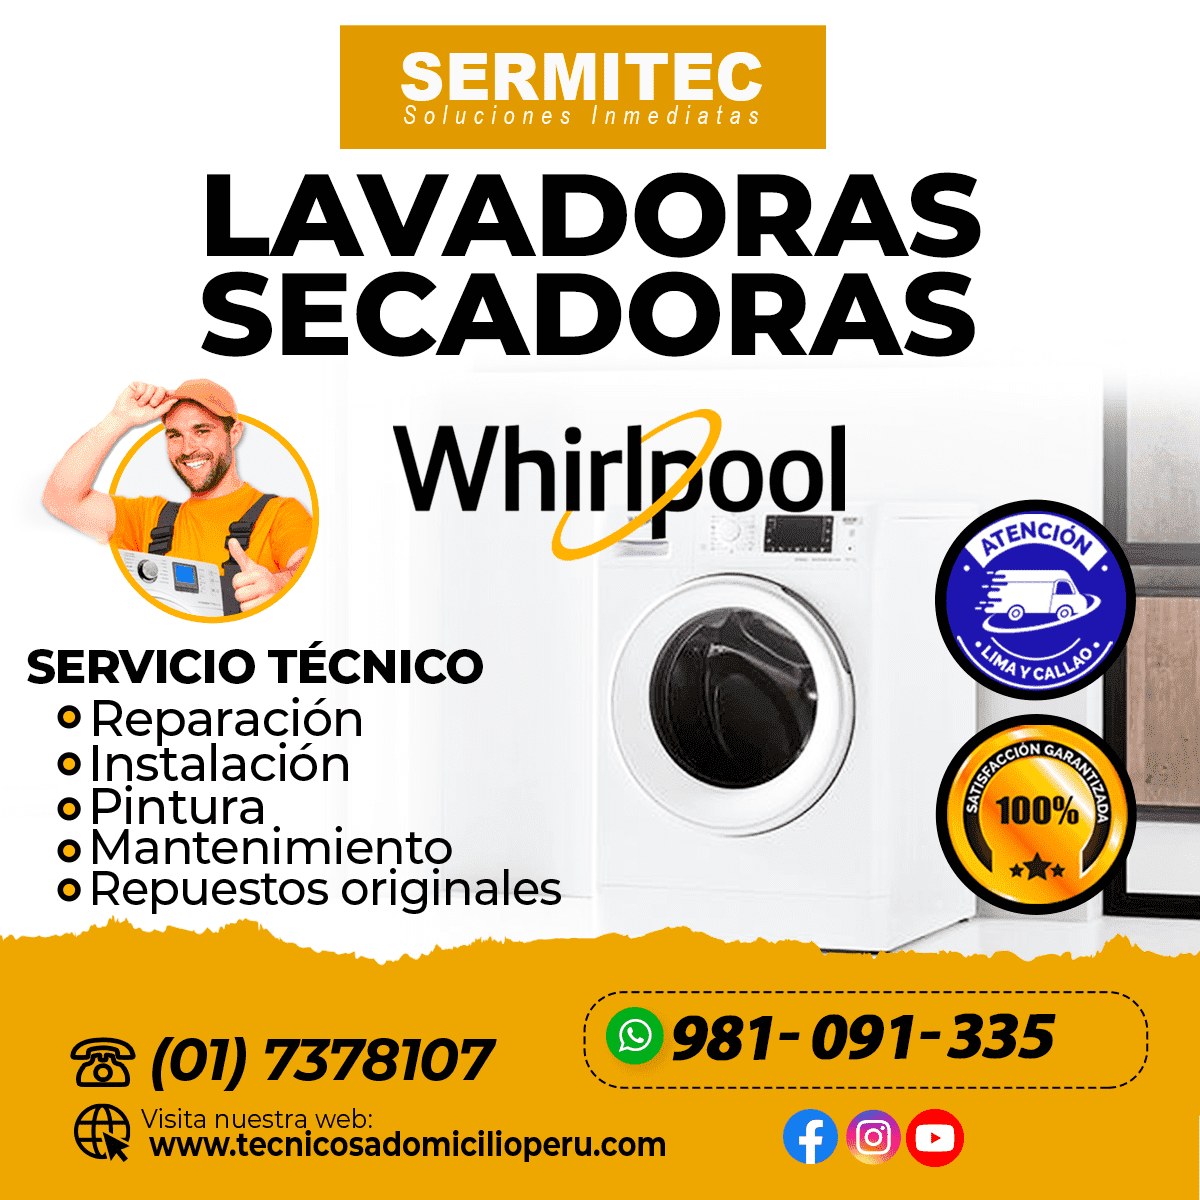 WHIRLPOOL Reparacion de Lavadoras 981091335 Barranco